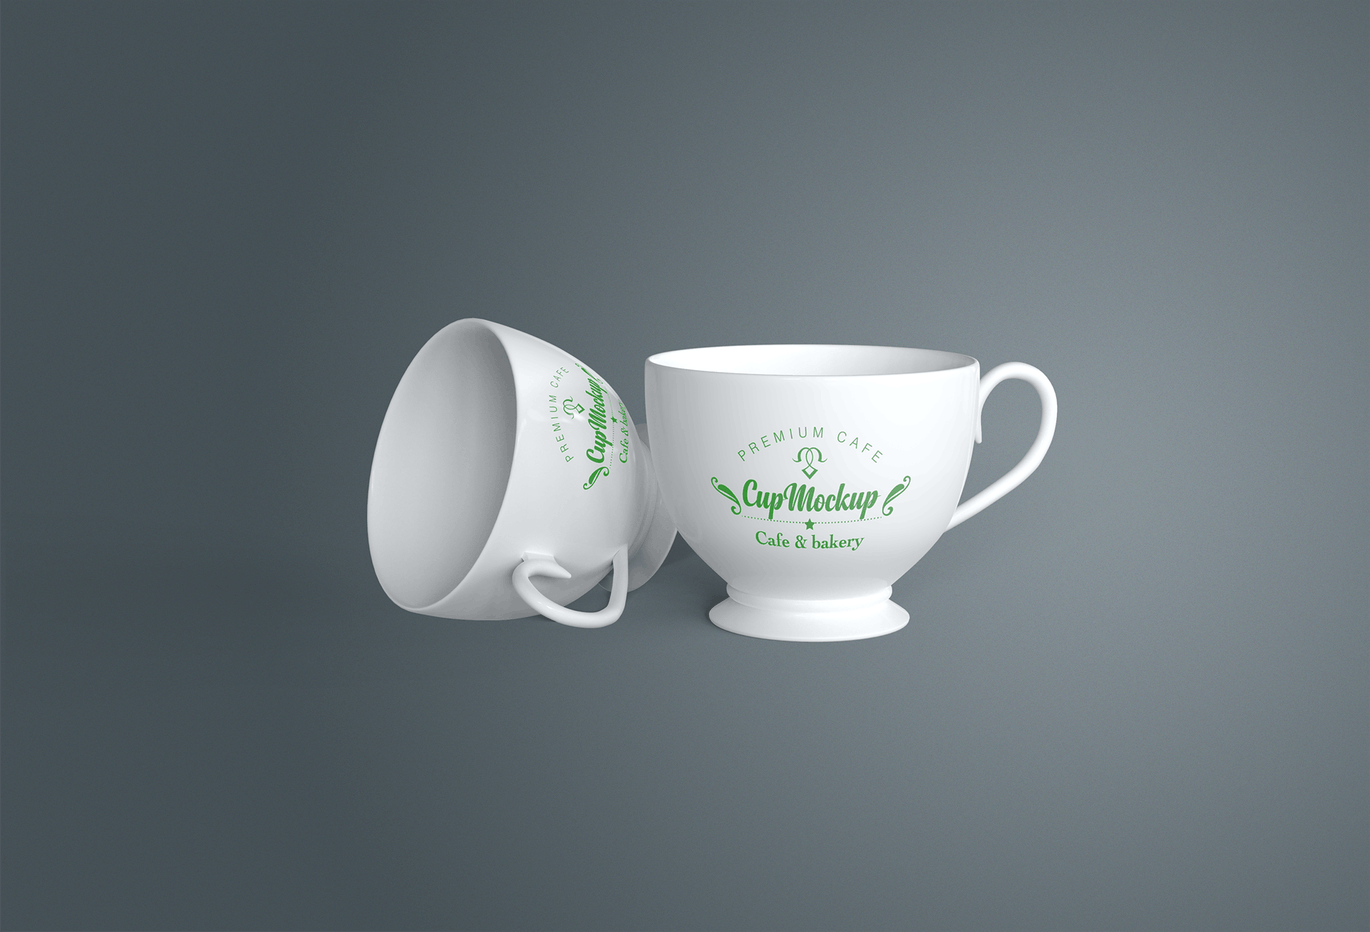 陶瓷茶杯咖啡杯外观设计样机模板v2 Cup Mockup 2.0插图1